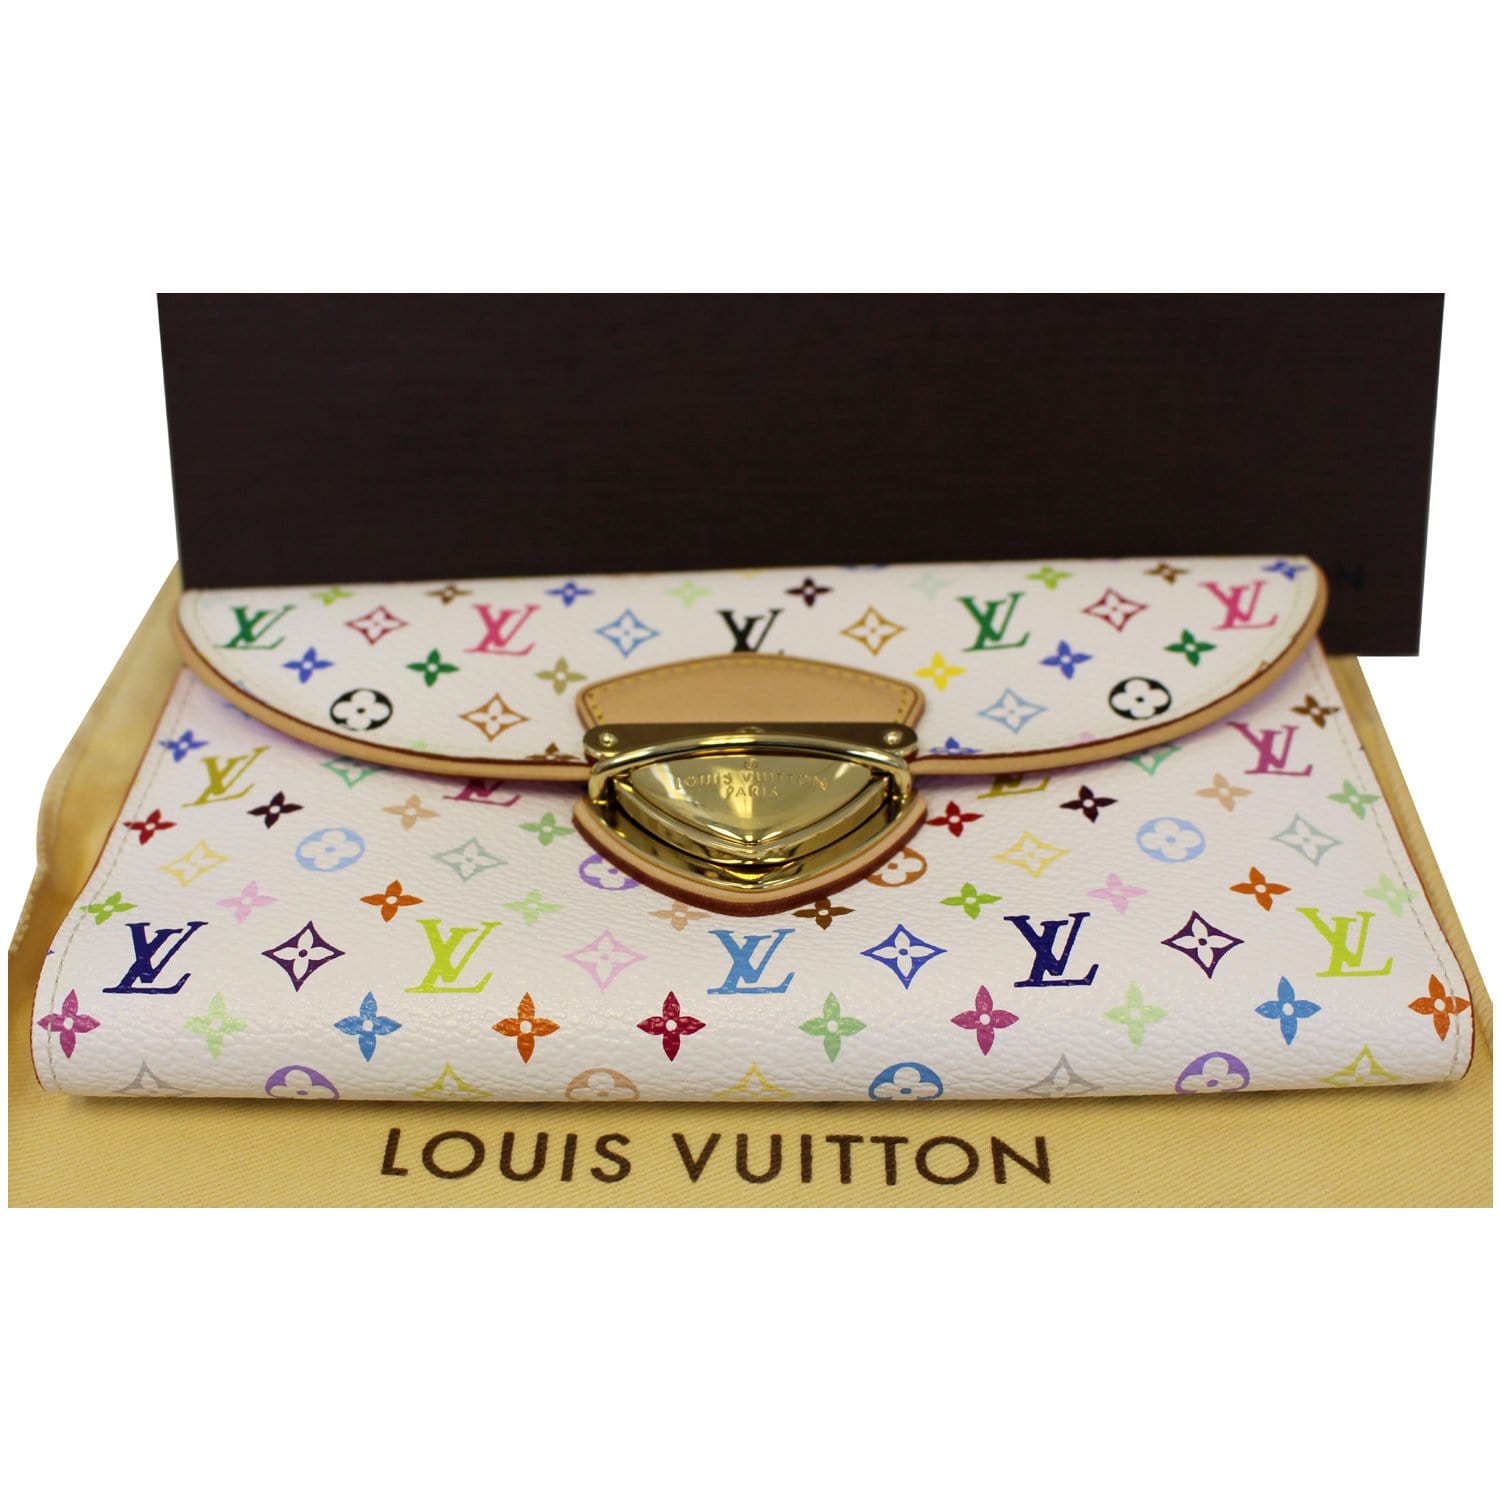 LOUIS VUITTON Eugenie Monogram Multicolor Wallet review